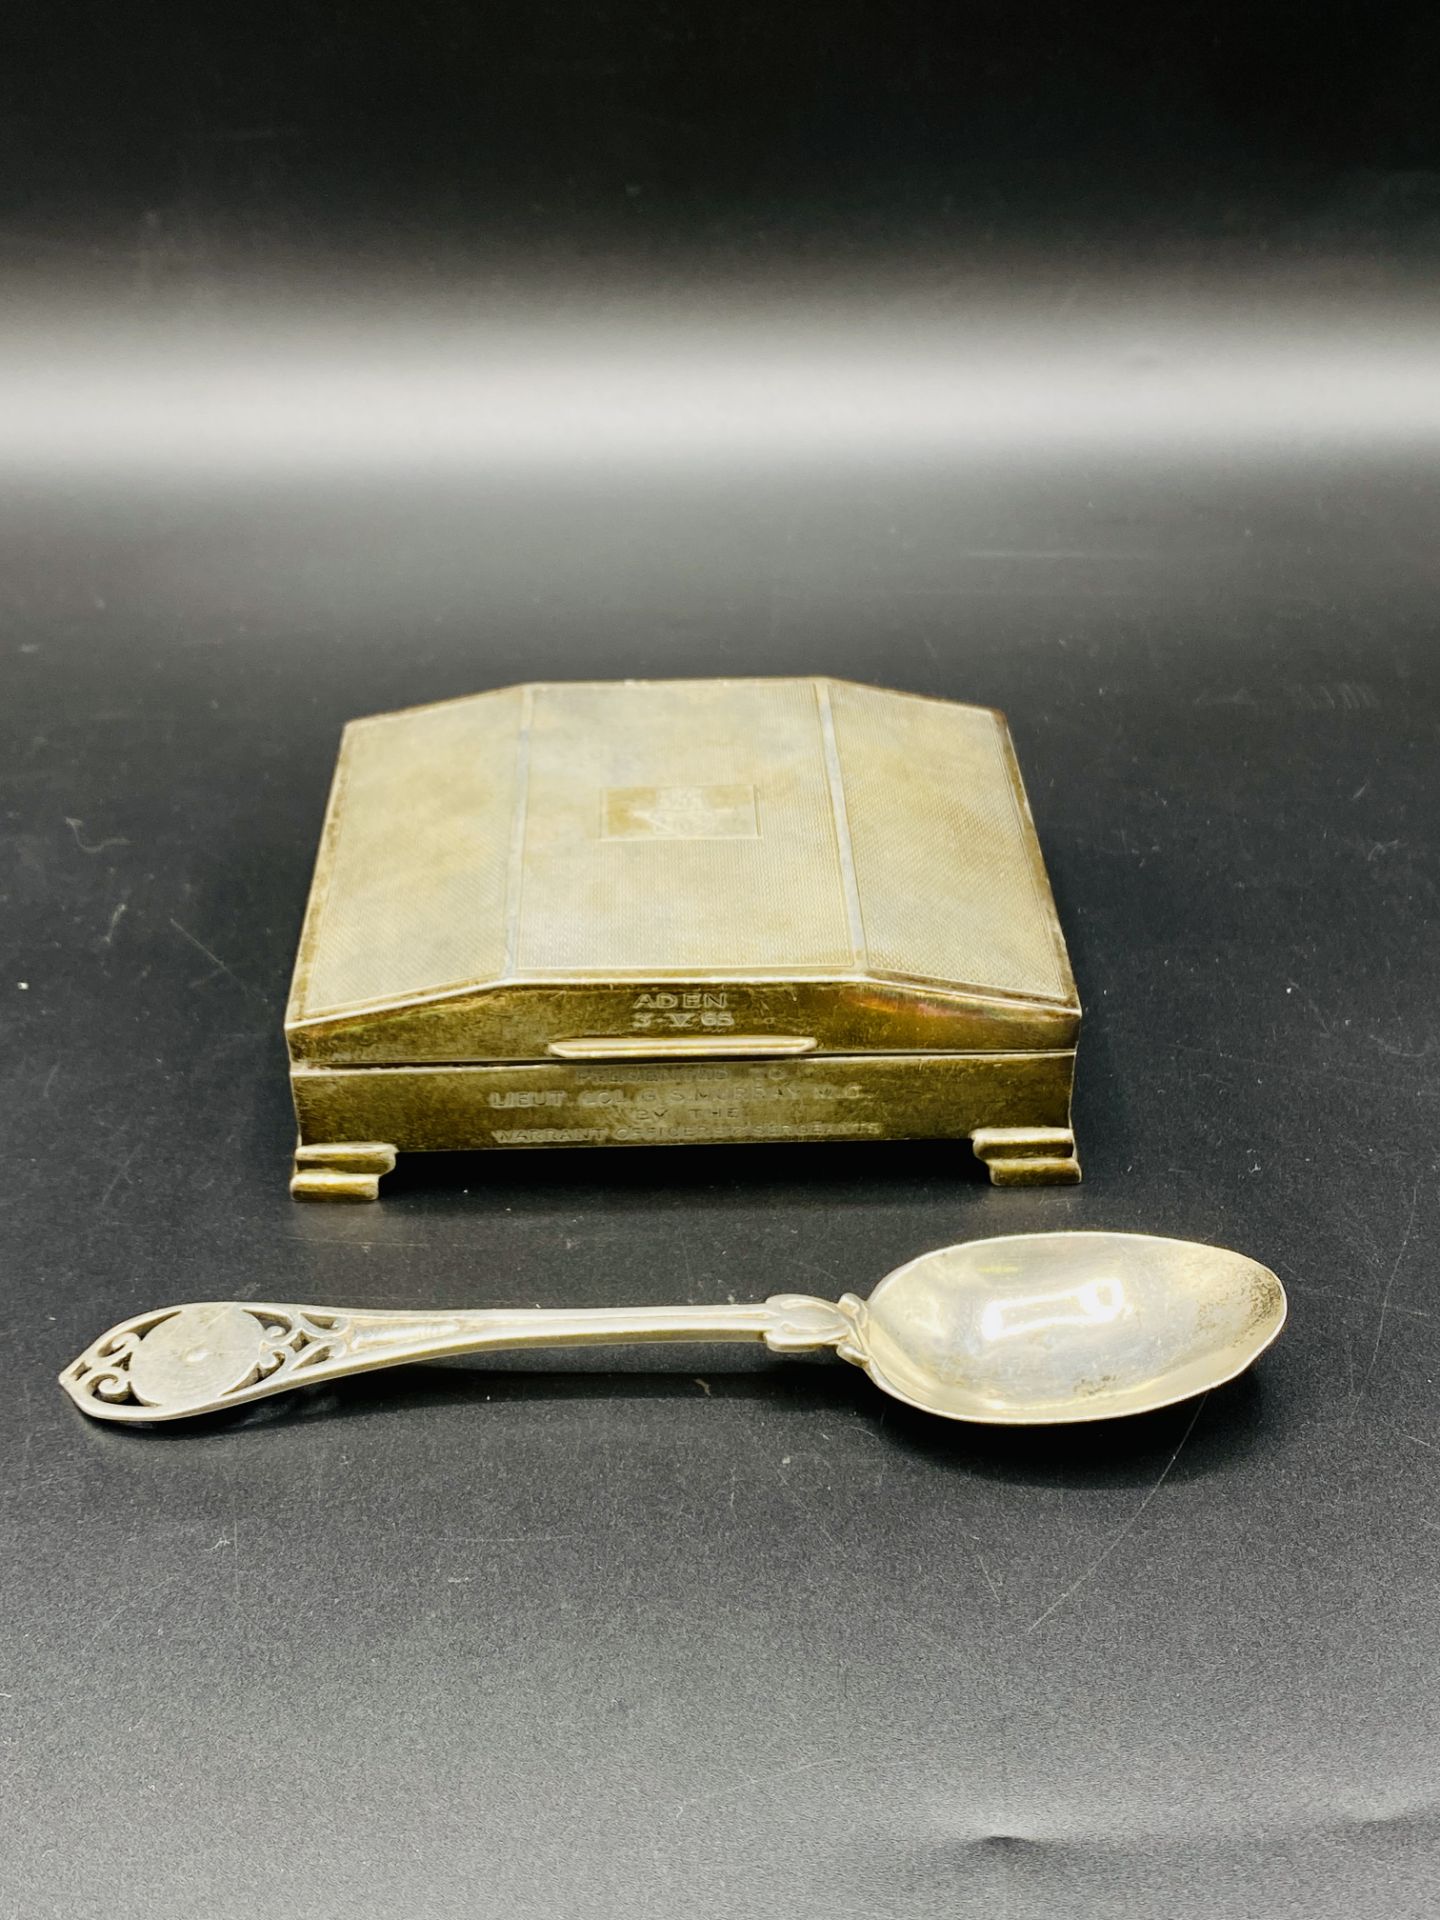 Silver cigarette box and spoon